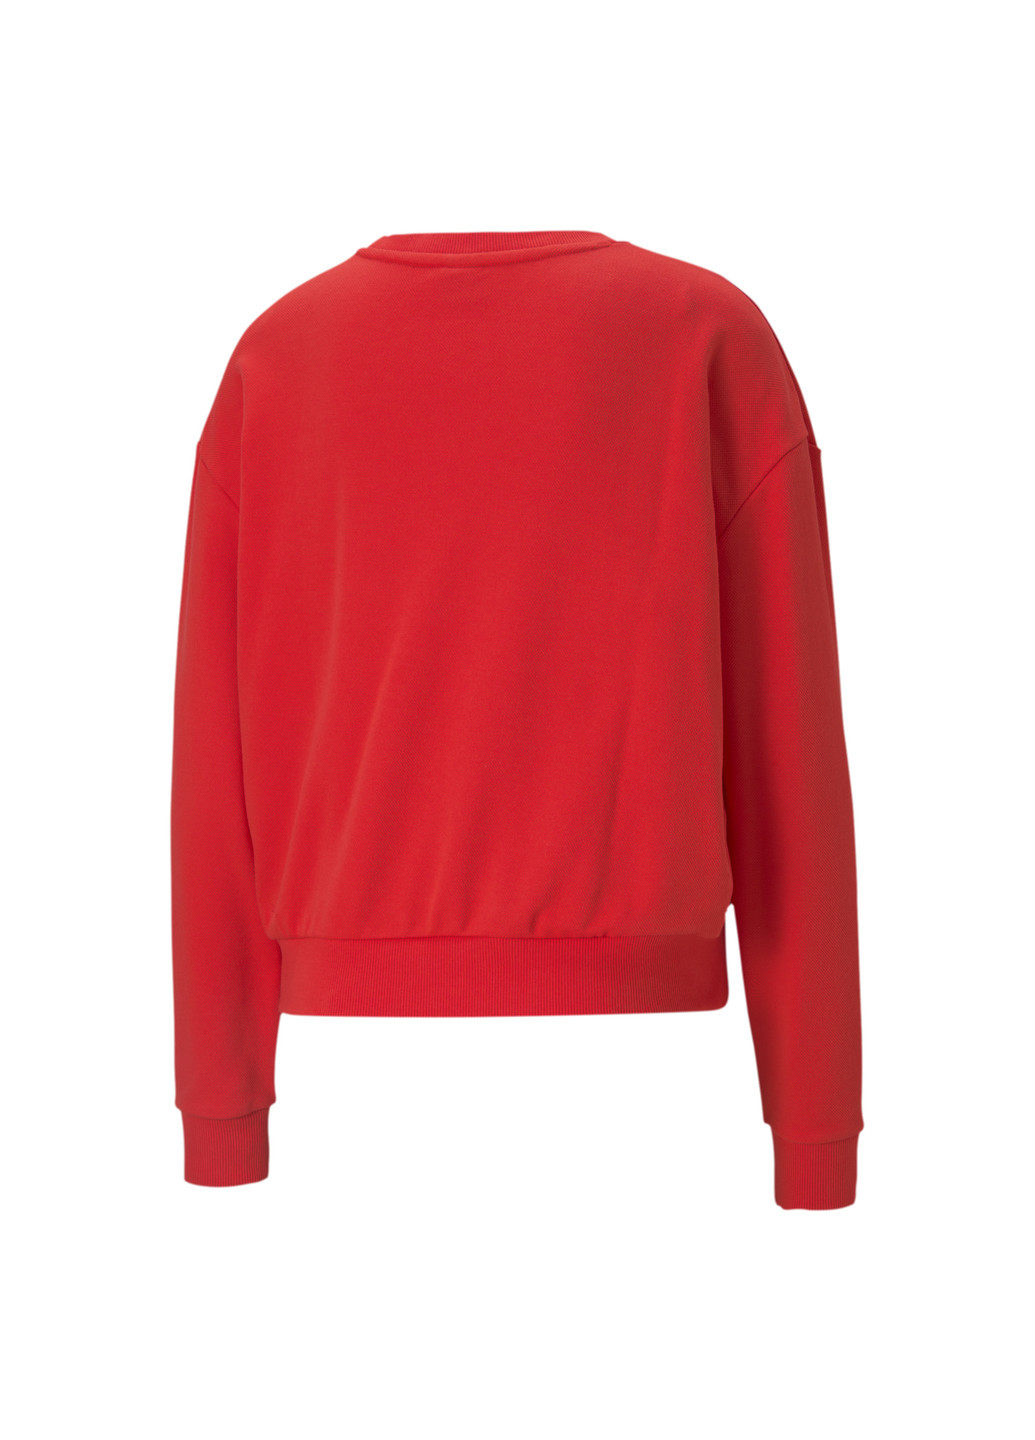 Свитшот Modern Basics Crew Neck Women's Sweatshirt Puma однотонная красная спортивная хлопок, полиэстер, эластан